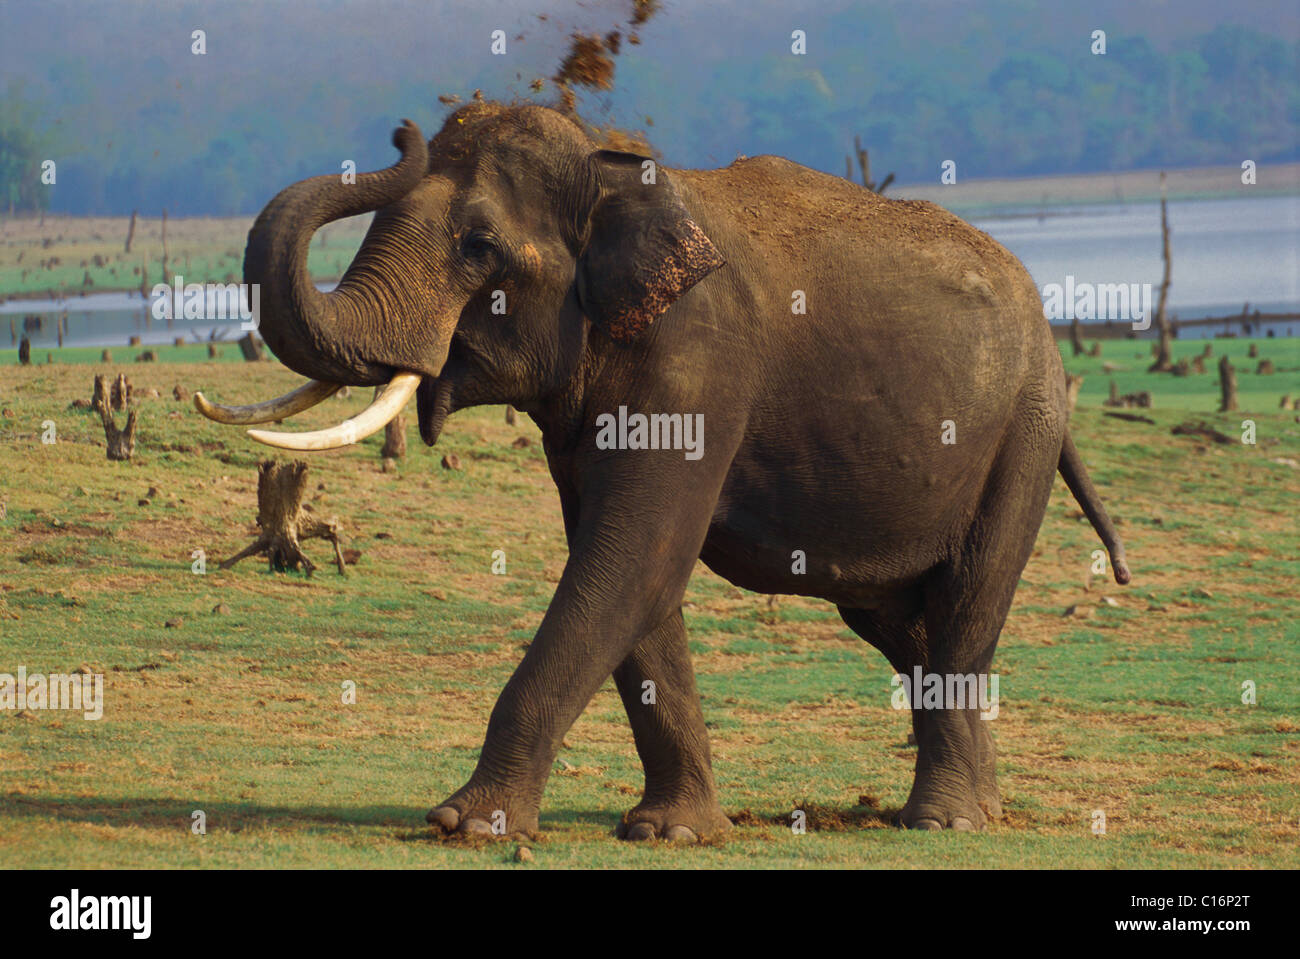 L'éléphant indien (Elephas maximus indicus) marche dans une forêt, Bandipur National Park, Chamarajanagar, Karnataka, Inde Banque D'Images